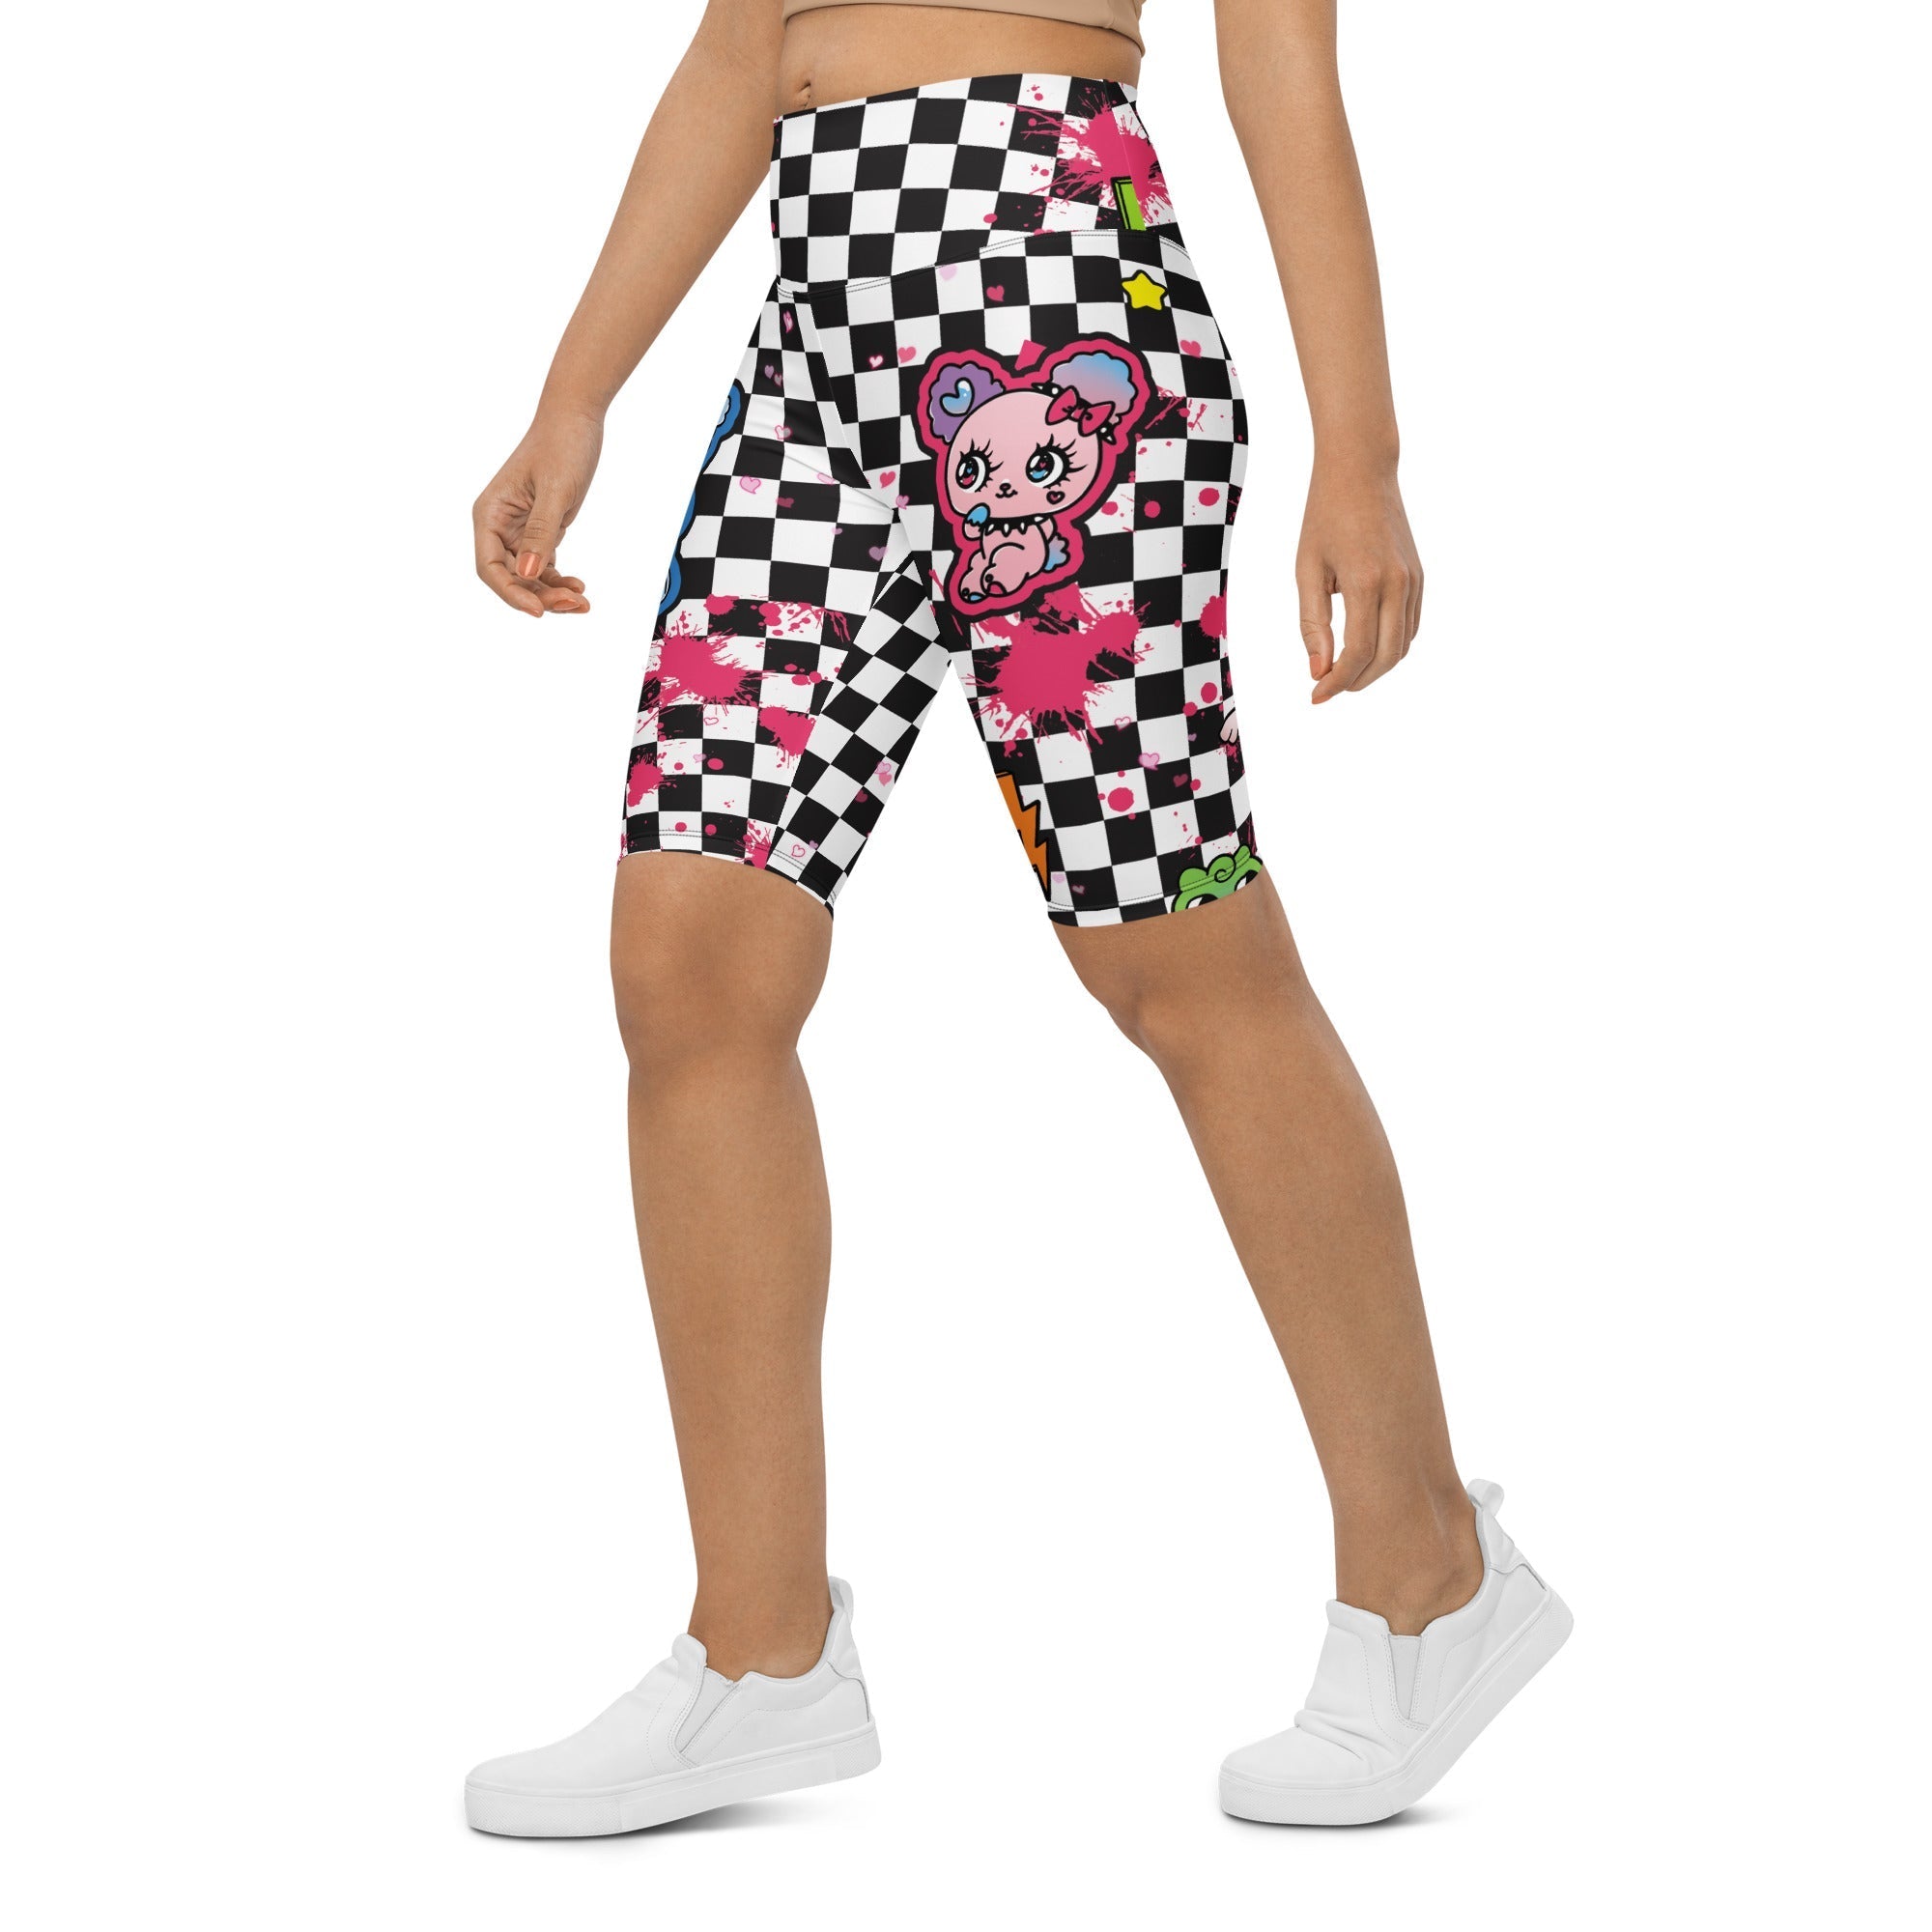 Harajuku Inspired Biker Shorts